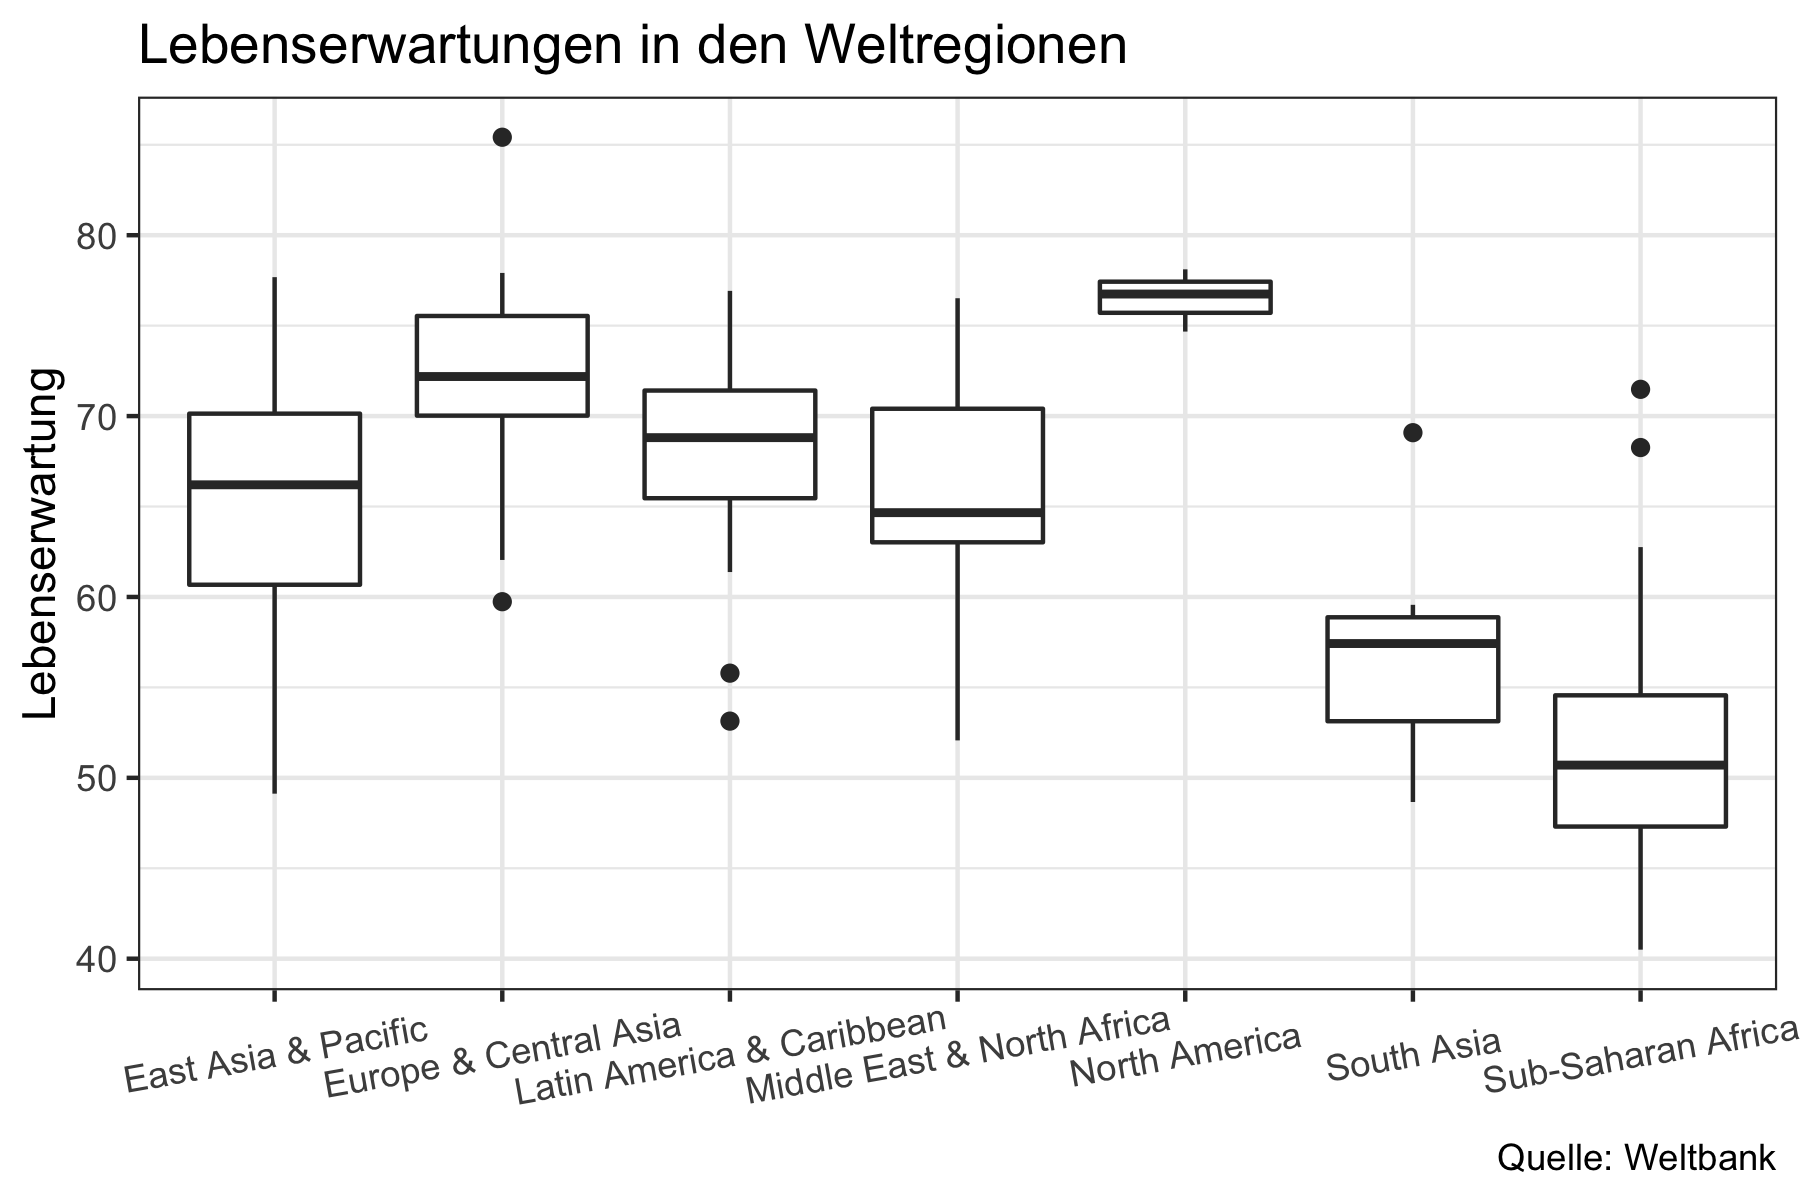 Darstellung der Lebenserwartungen in den Weltregionen anhand eines Boxplots